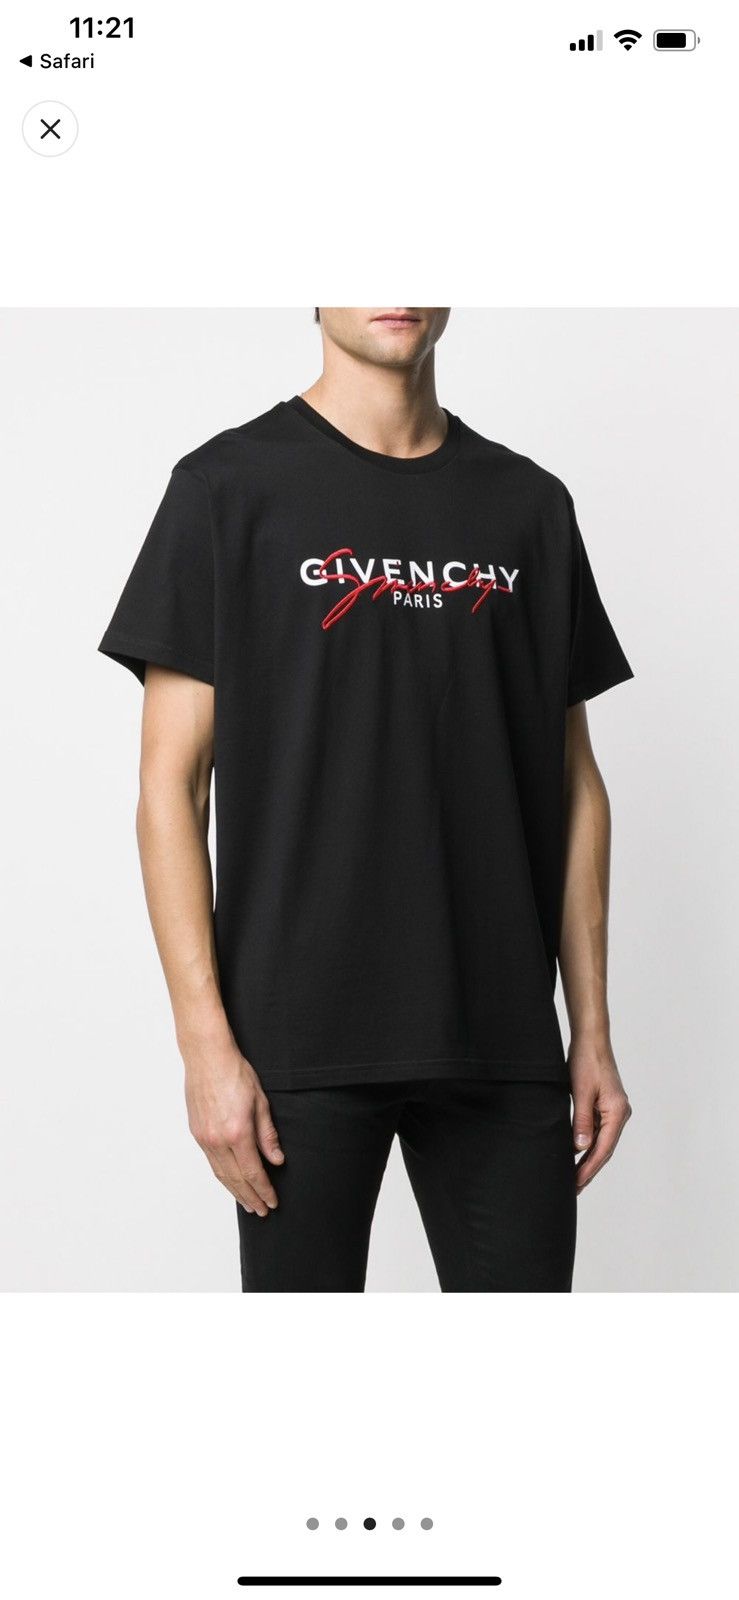 Givenchy Givenchy Paris Signature Black T-shirt Large Size BM70UK3002 Size US L / EU 52-54 / 3 - 2 Preview